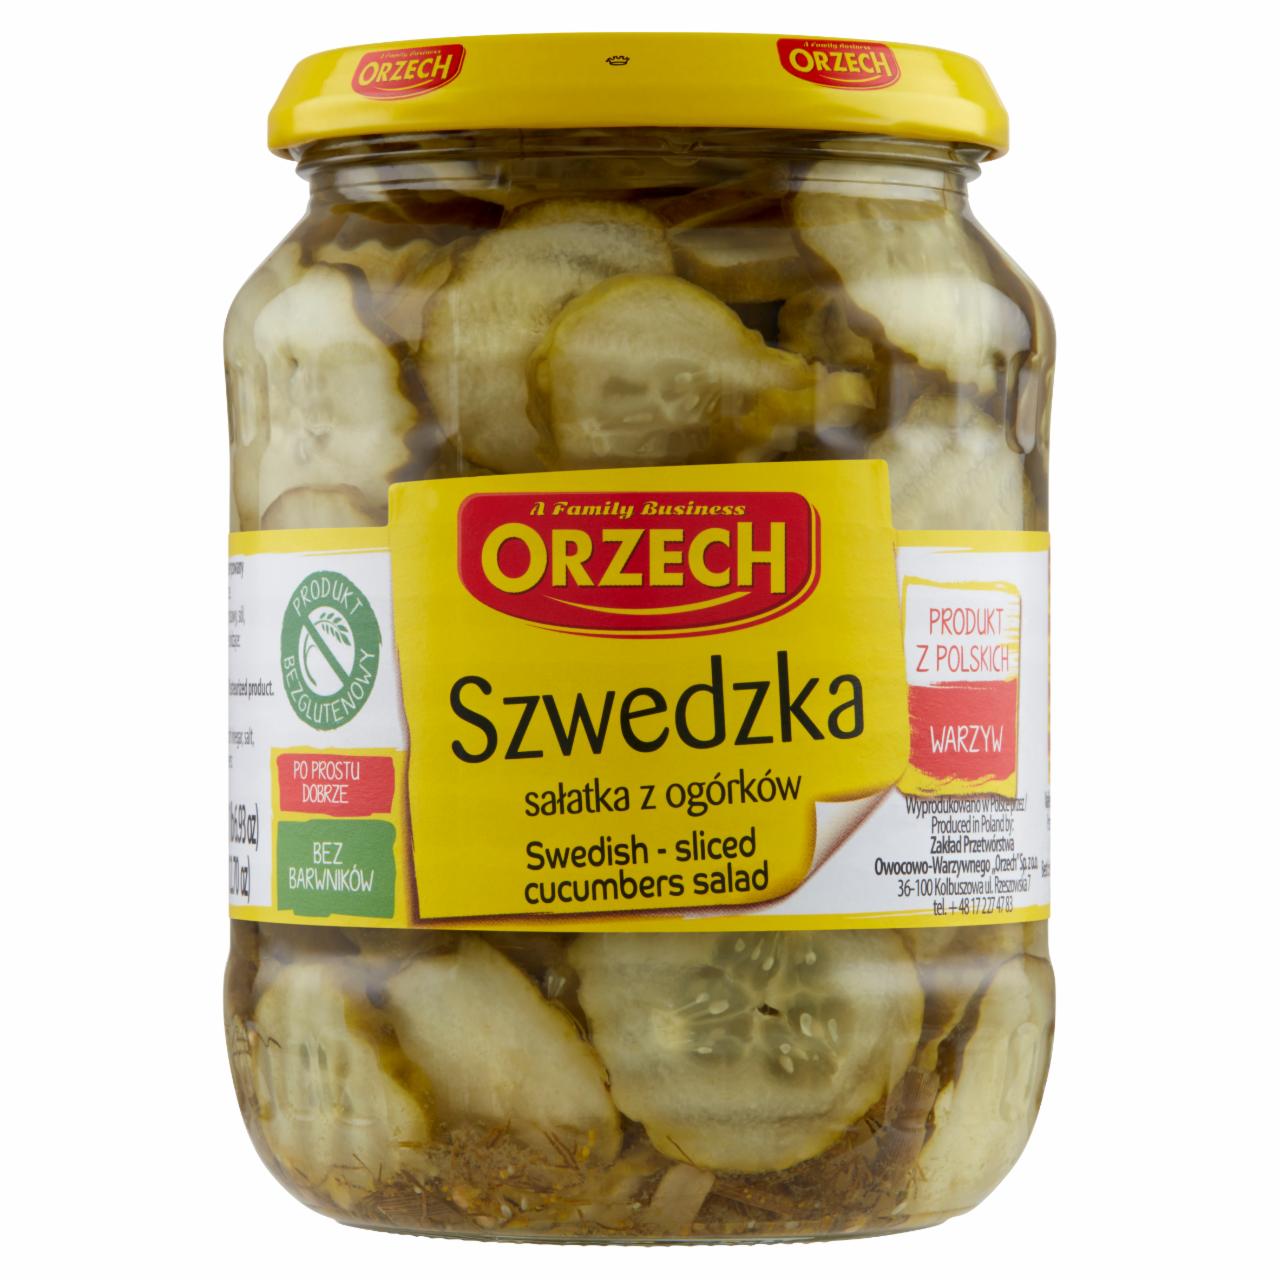 Zdjęcia - Orzech Szwedzka sałatka z ogórków 650 g